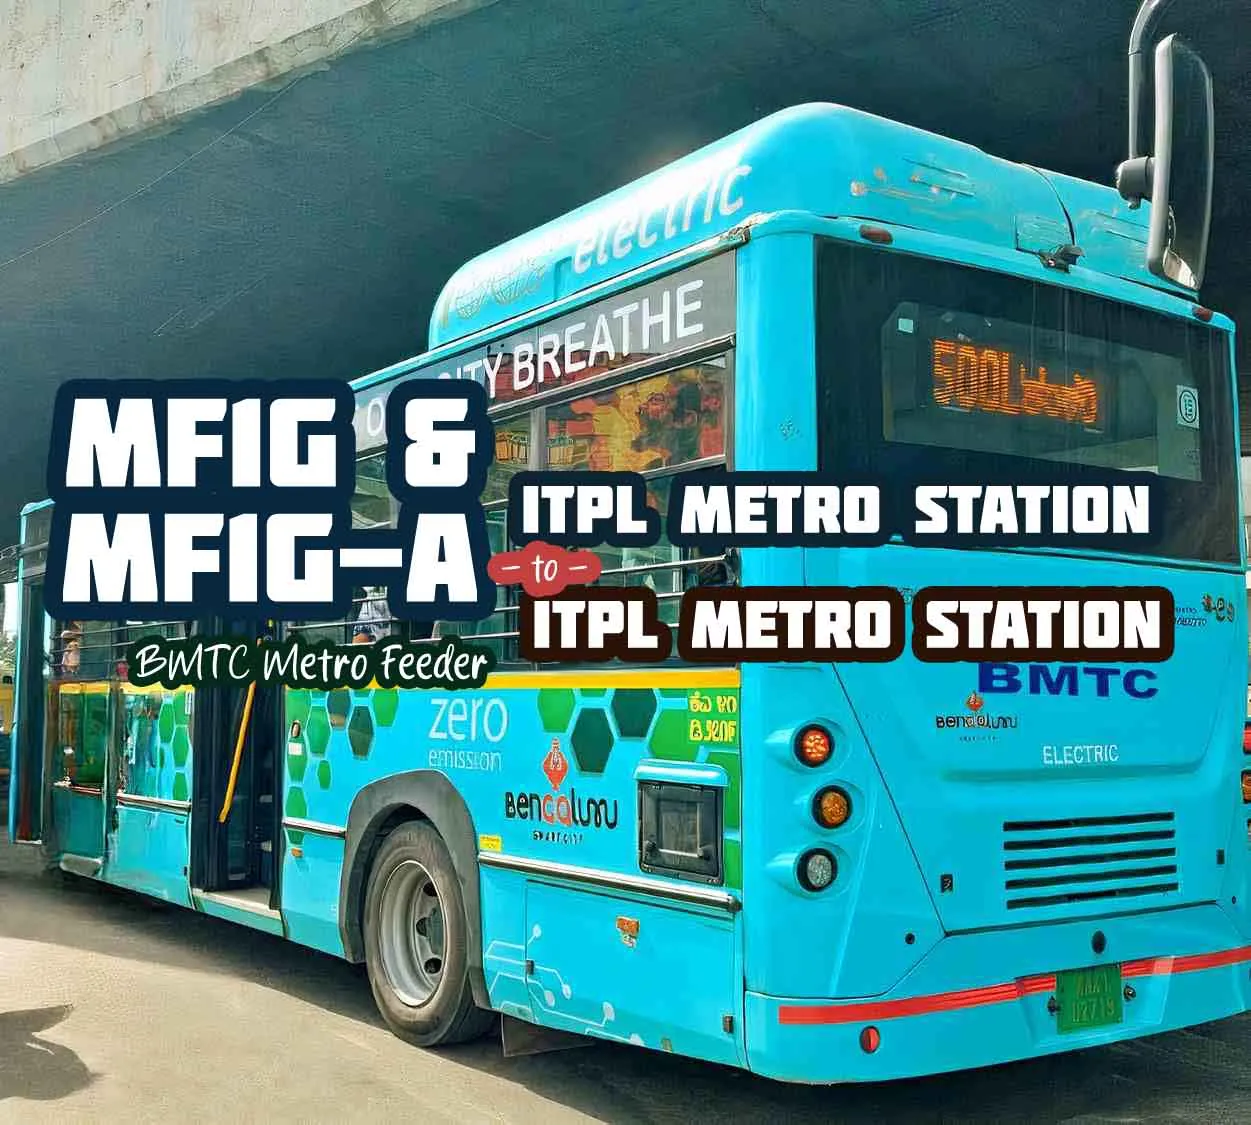 BMTC Metro Feeder MF1G, MF1G-A ITPL Metro to ITPL Metro Bus Timings